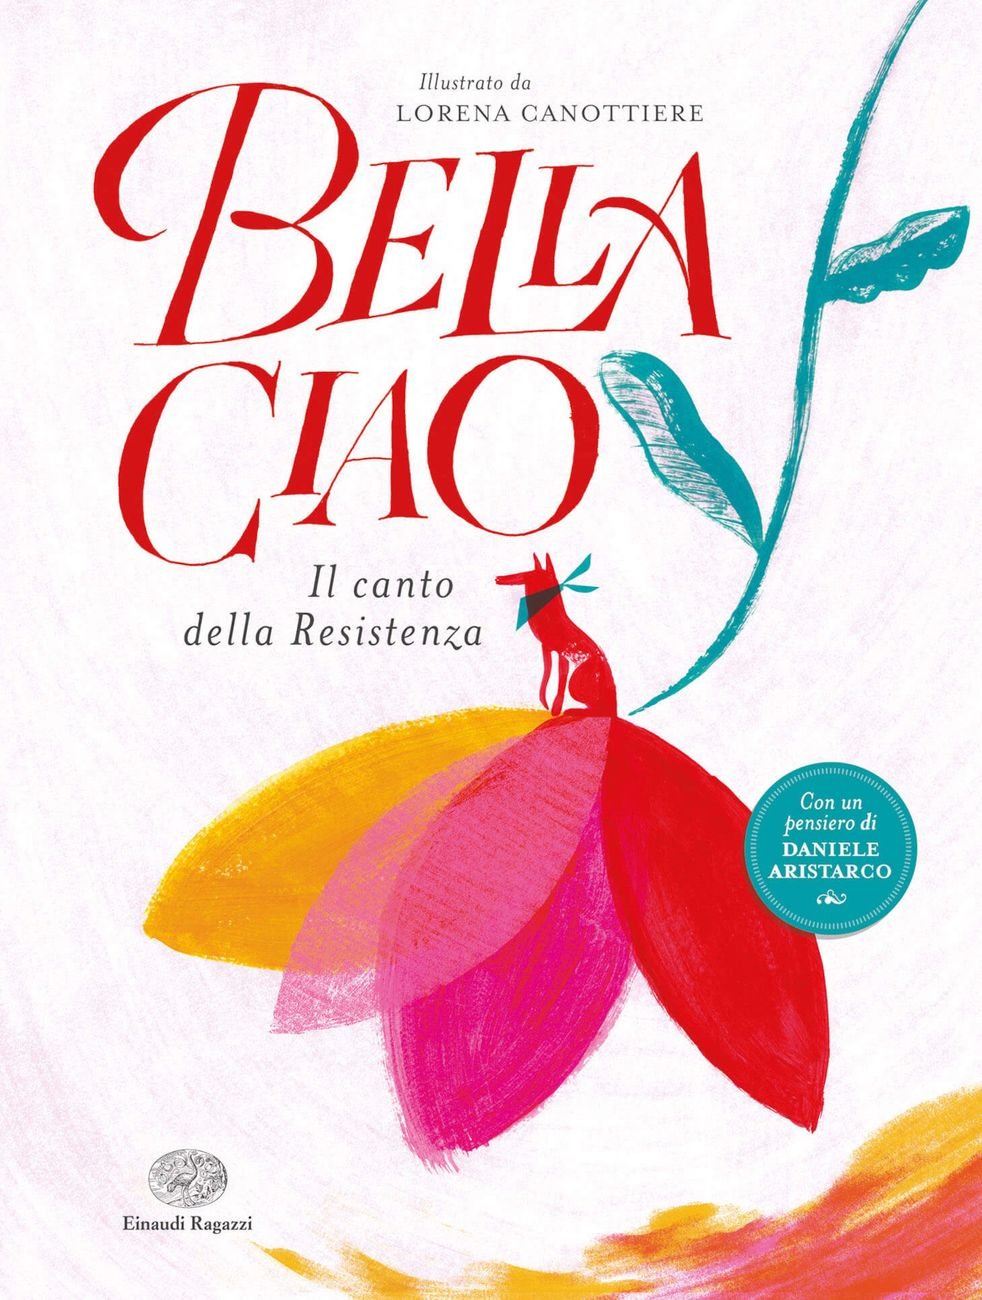 Lorena Canottiere – Bella ciao. Il canto della Resistenza (Einaudi Ragazzi, Milano 2020)